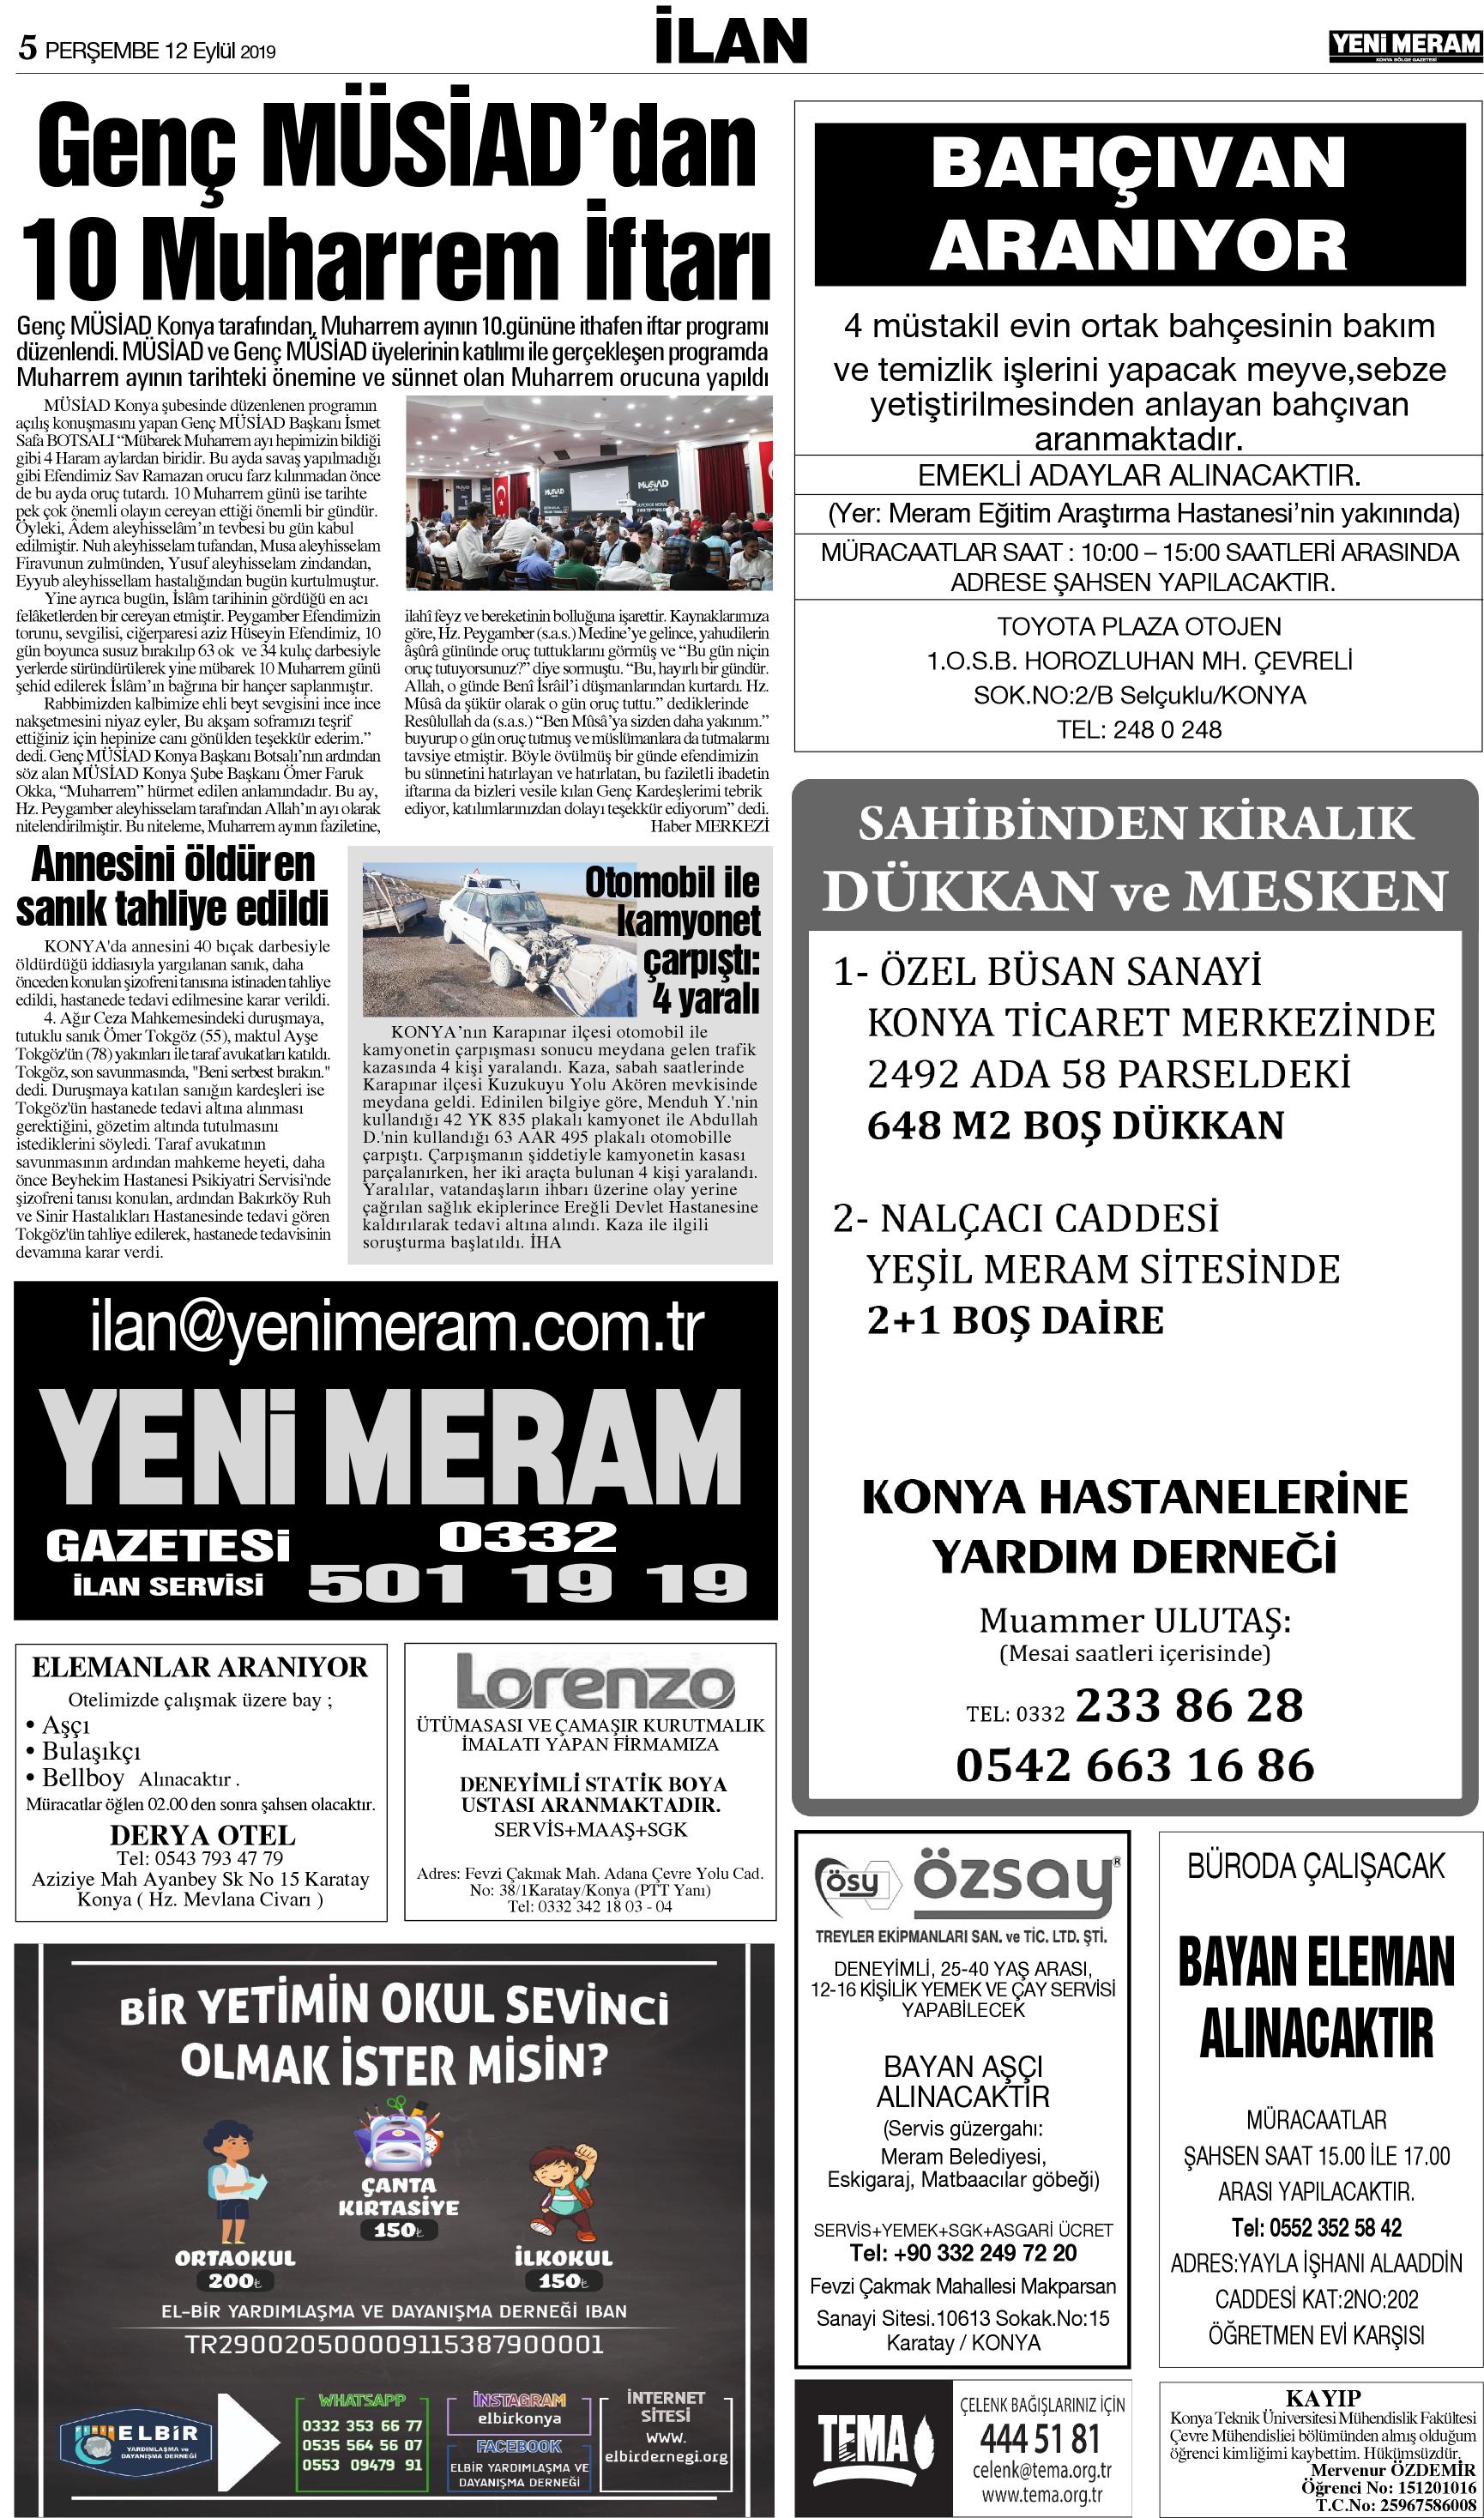 12 Eylül 2019 Yeni Meram Gazetesi